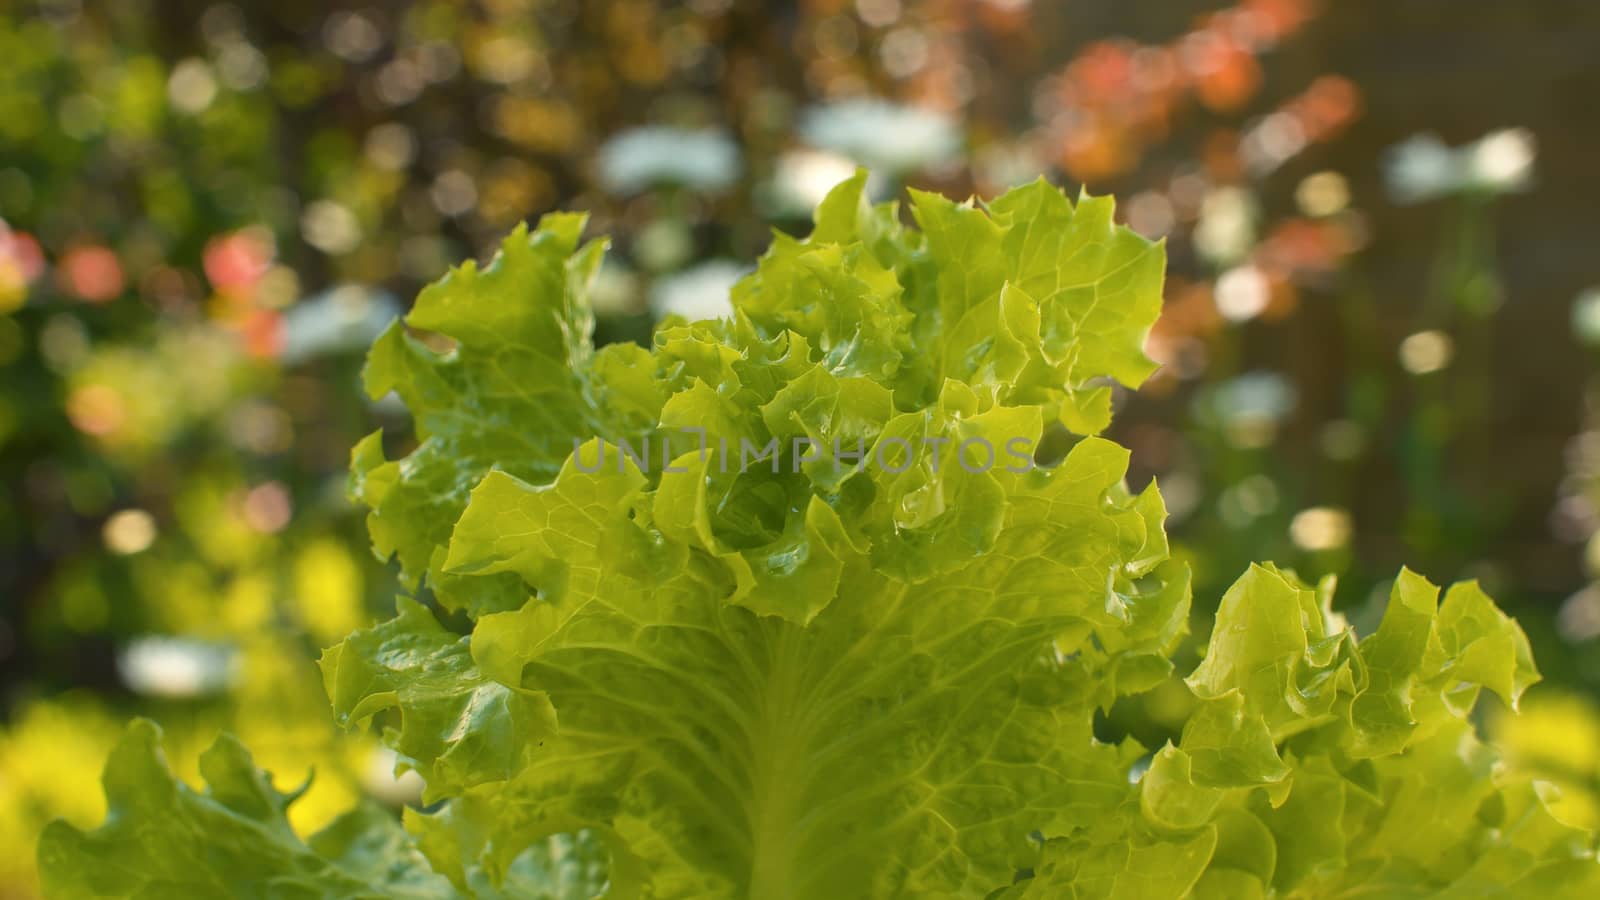 Bush of green fresh lettuce by Alize